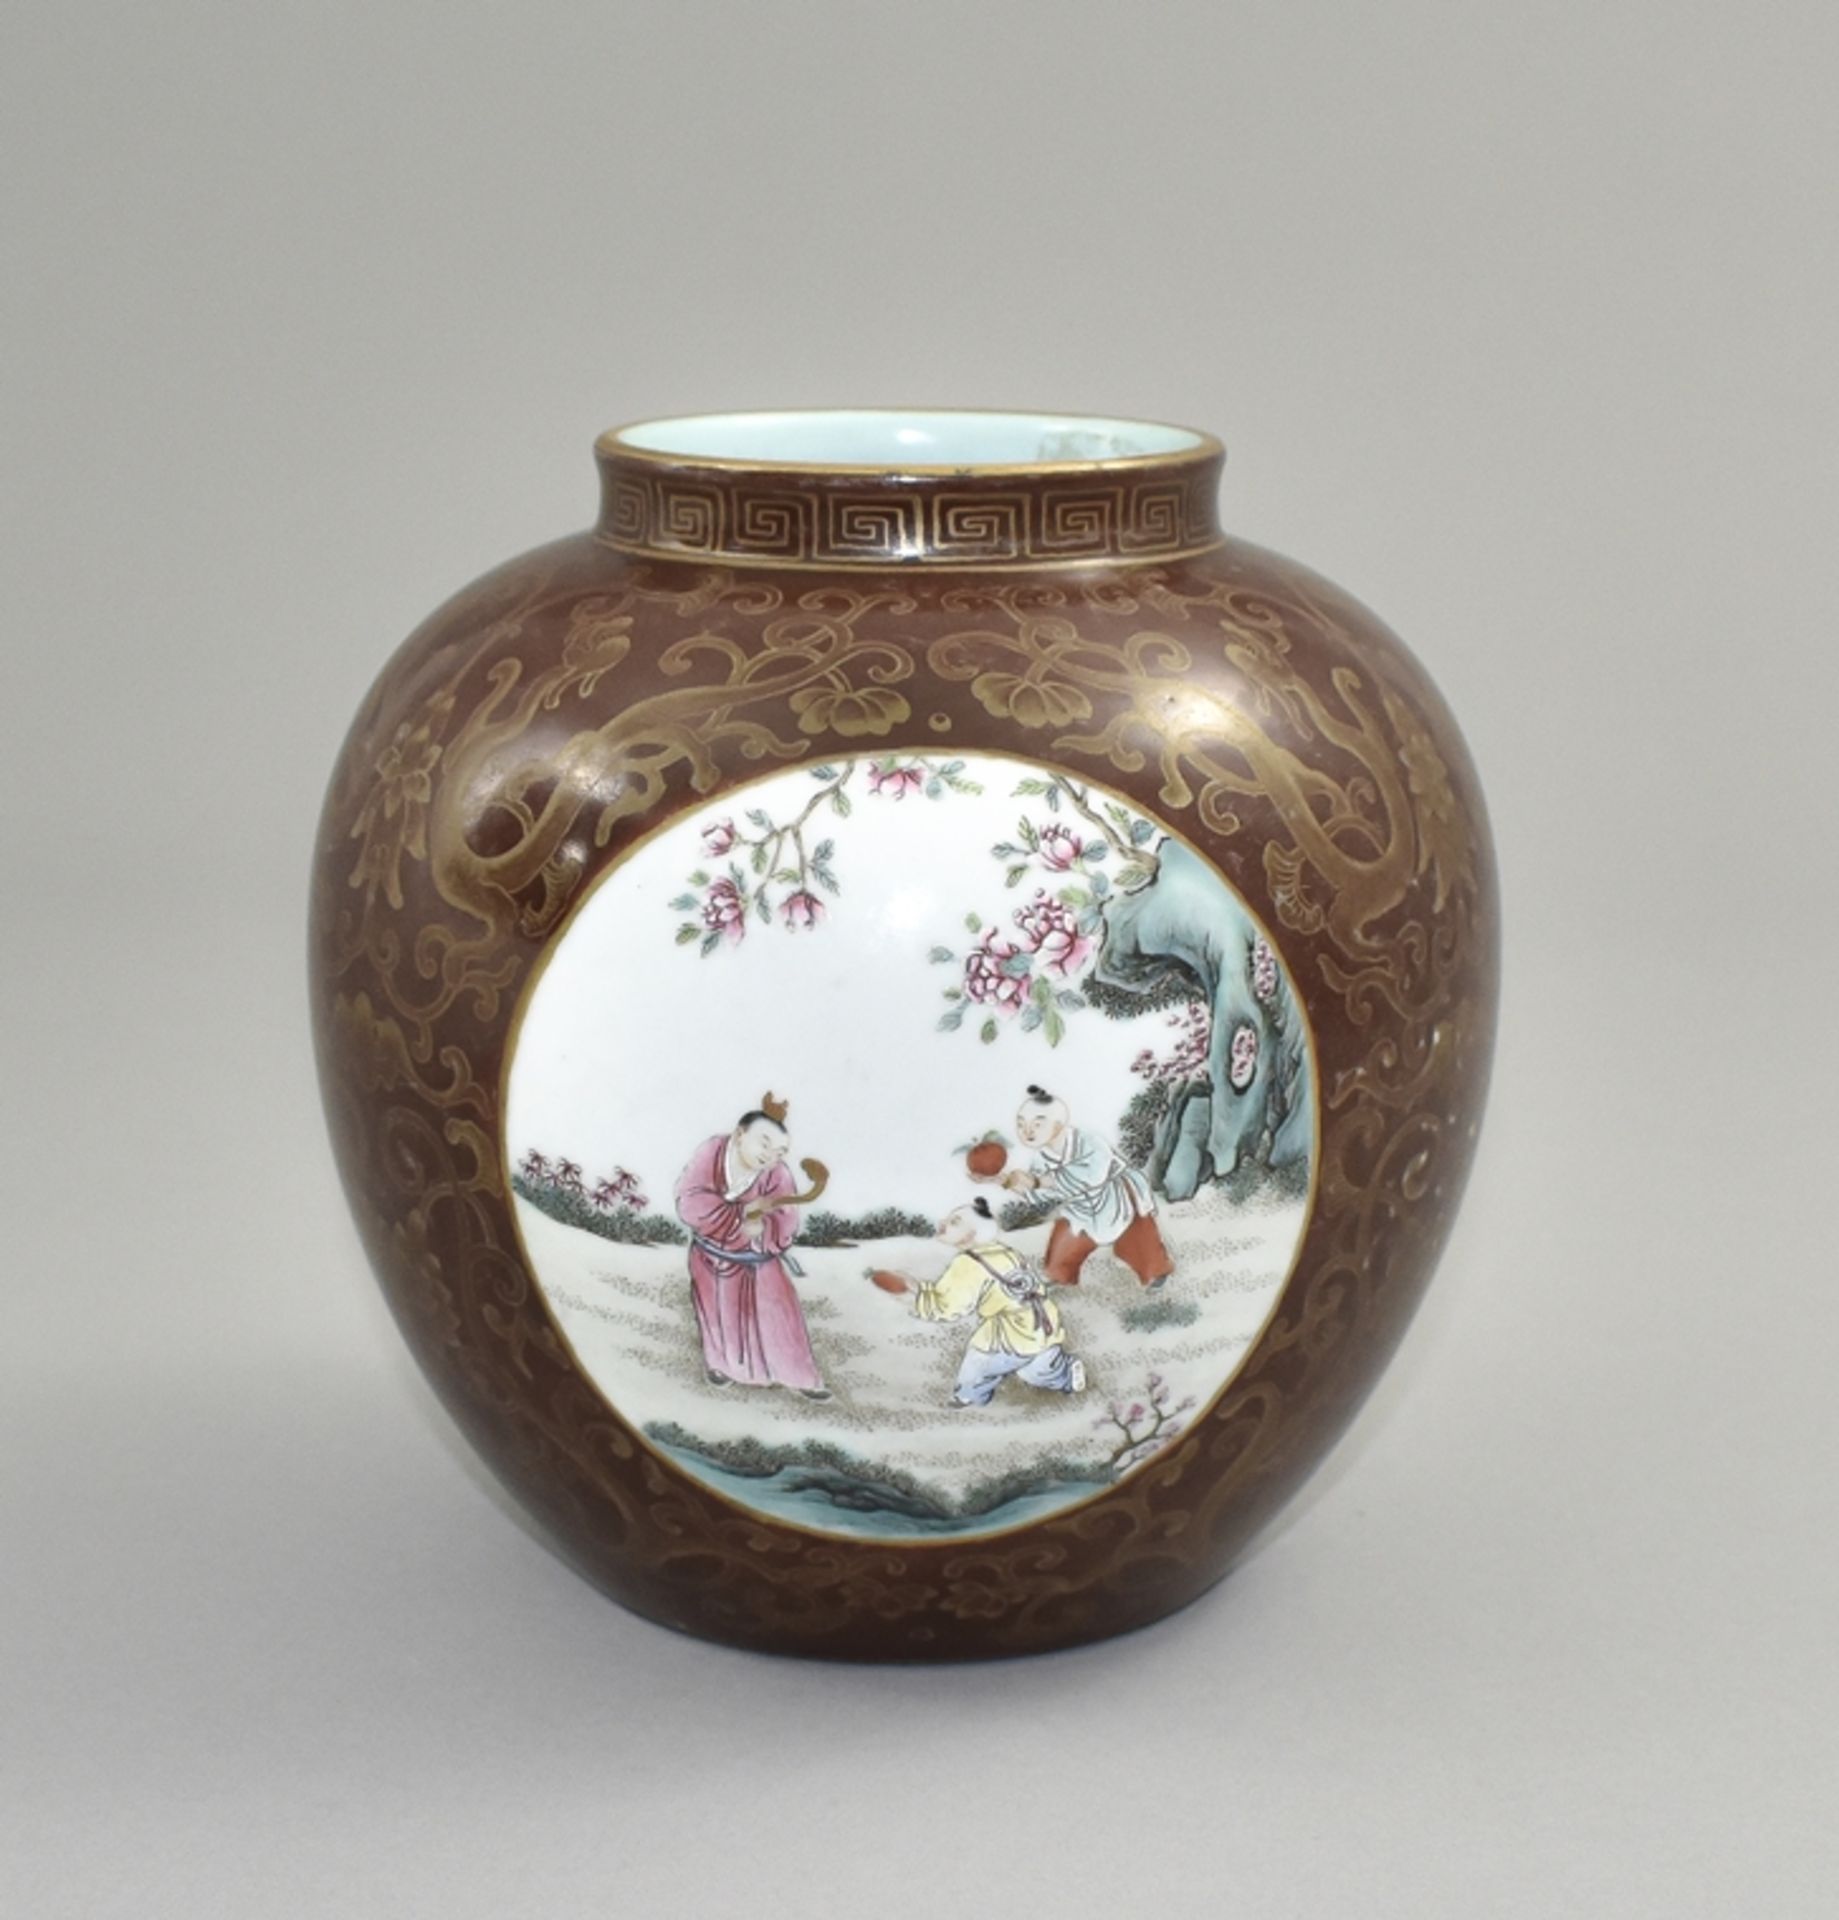 Bauchige Vase. Kurzer eingezogener Hals. Feine filigrane Goldmalerei mit Drachen und Chrysanthemen